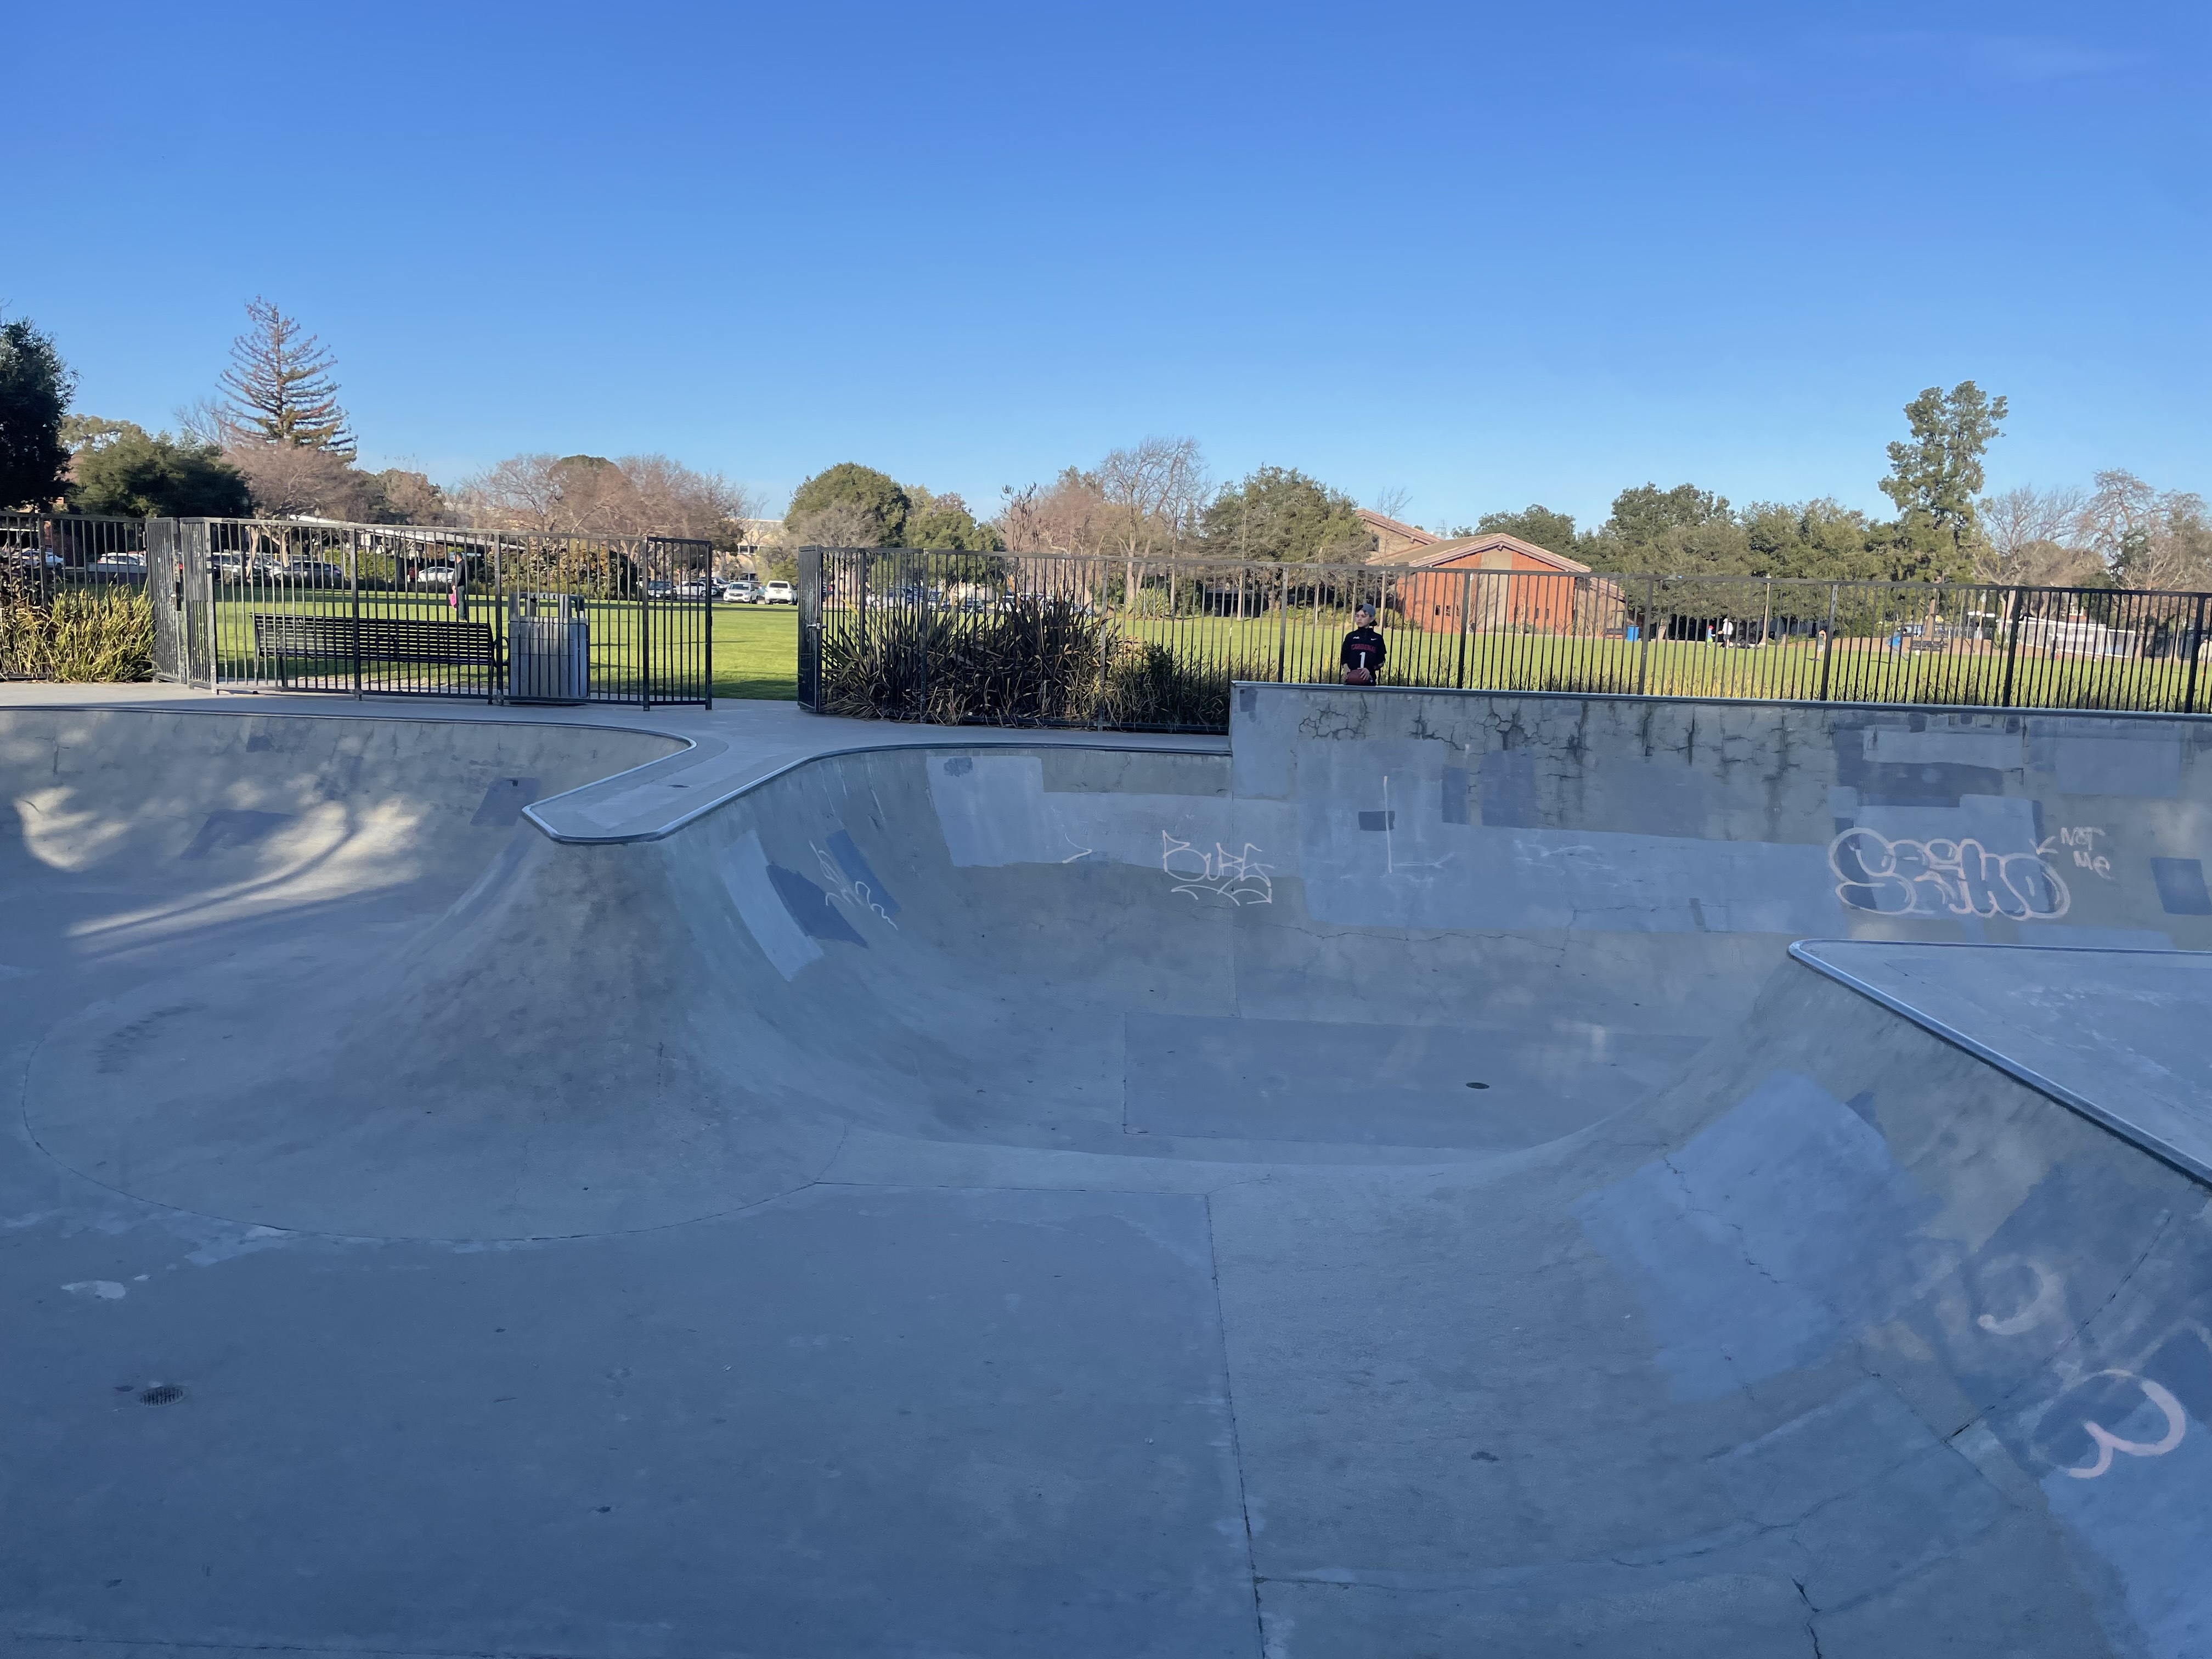 Burgess skatepark